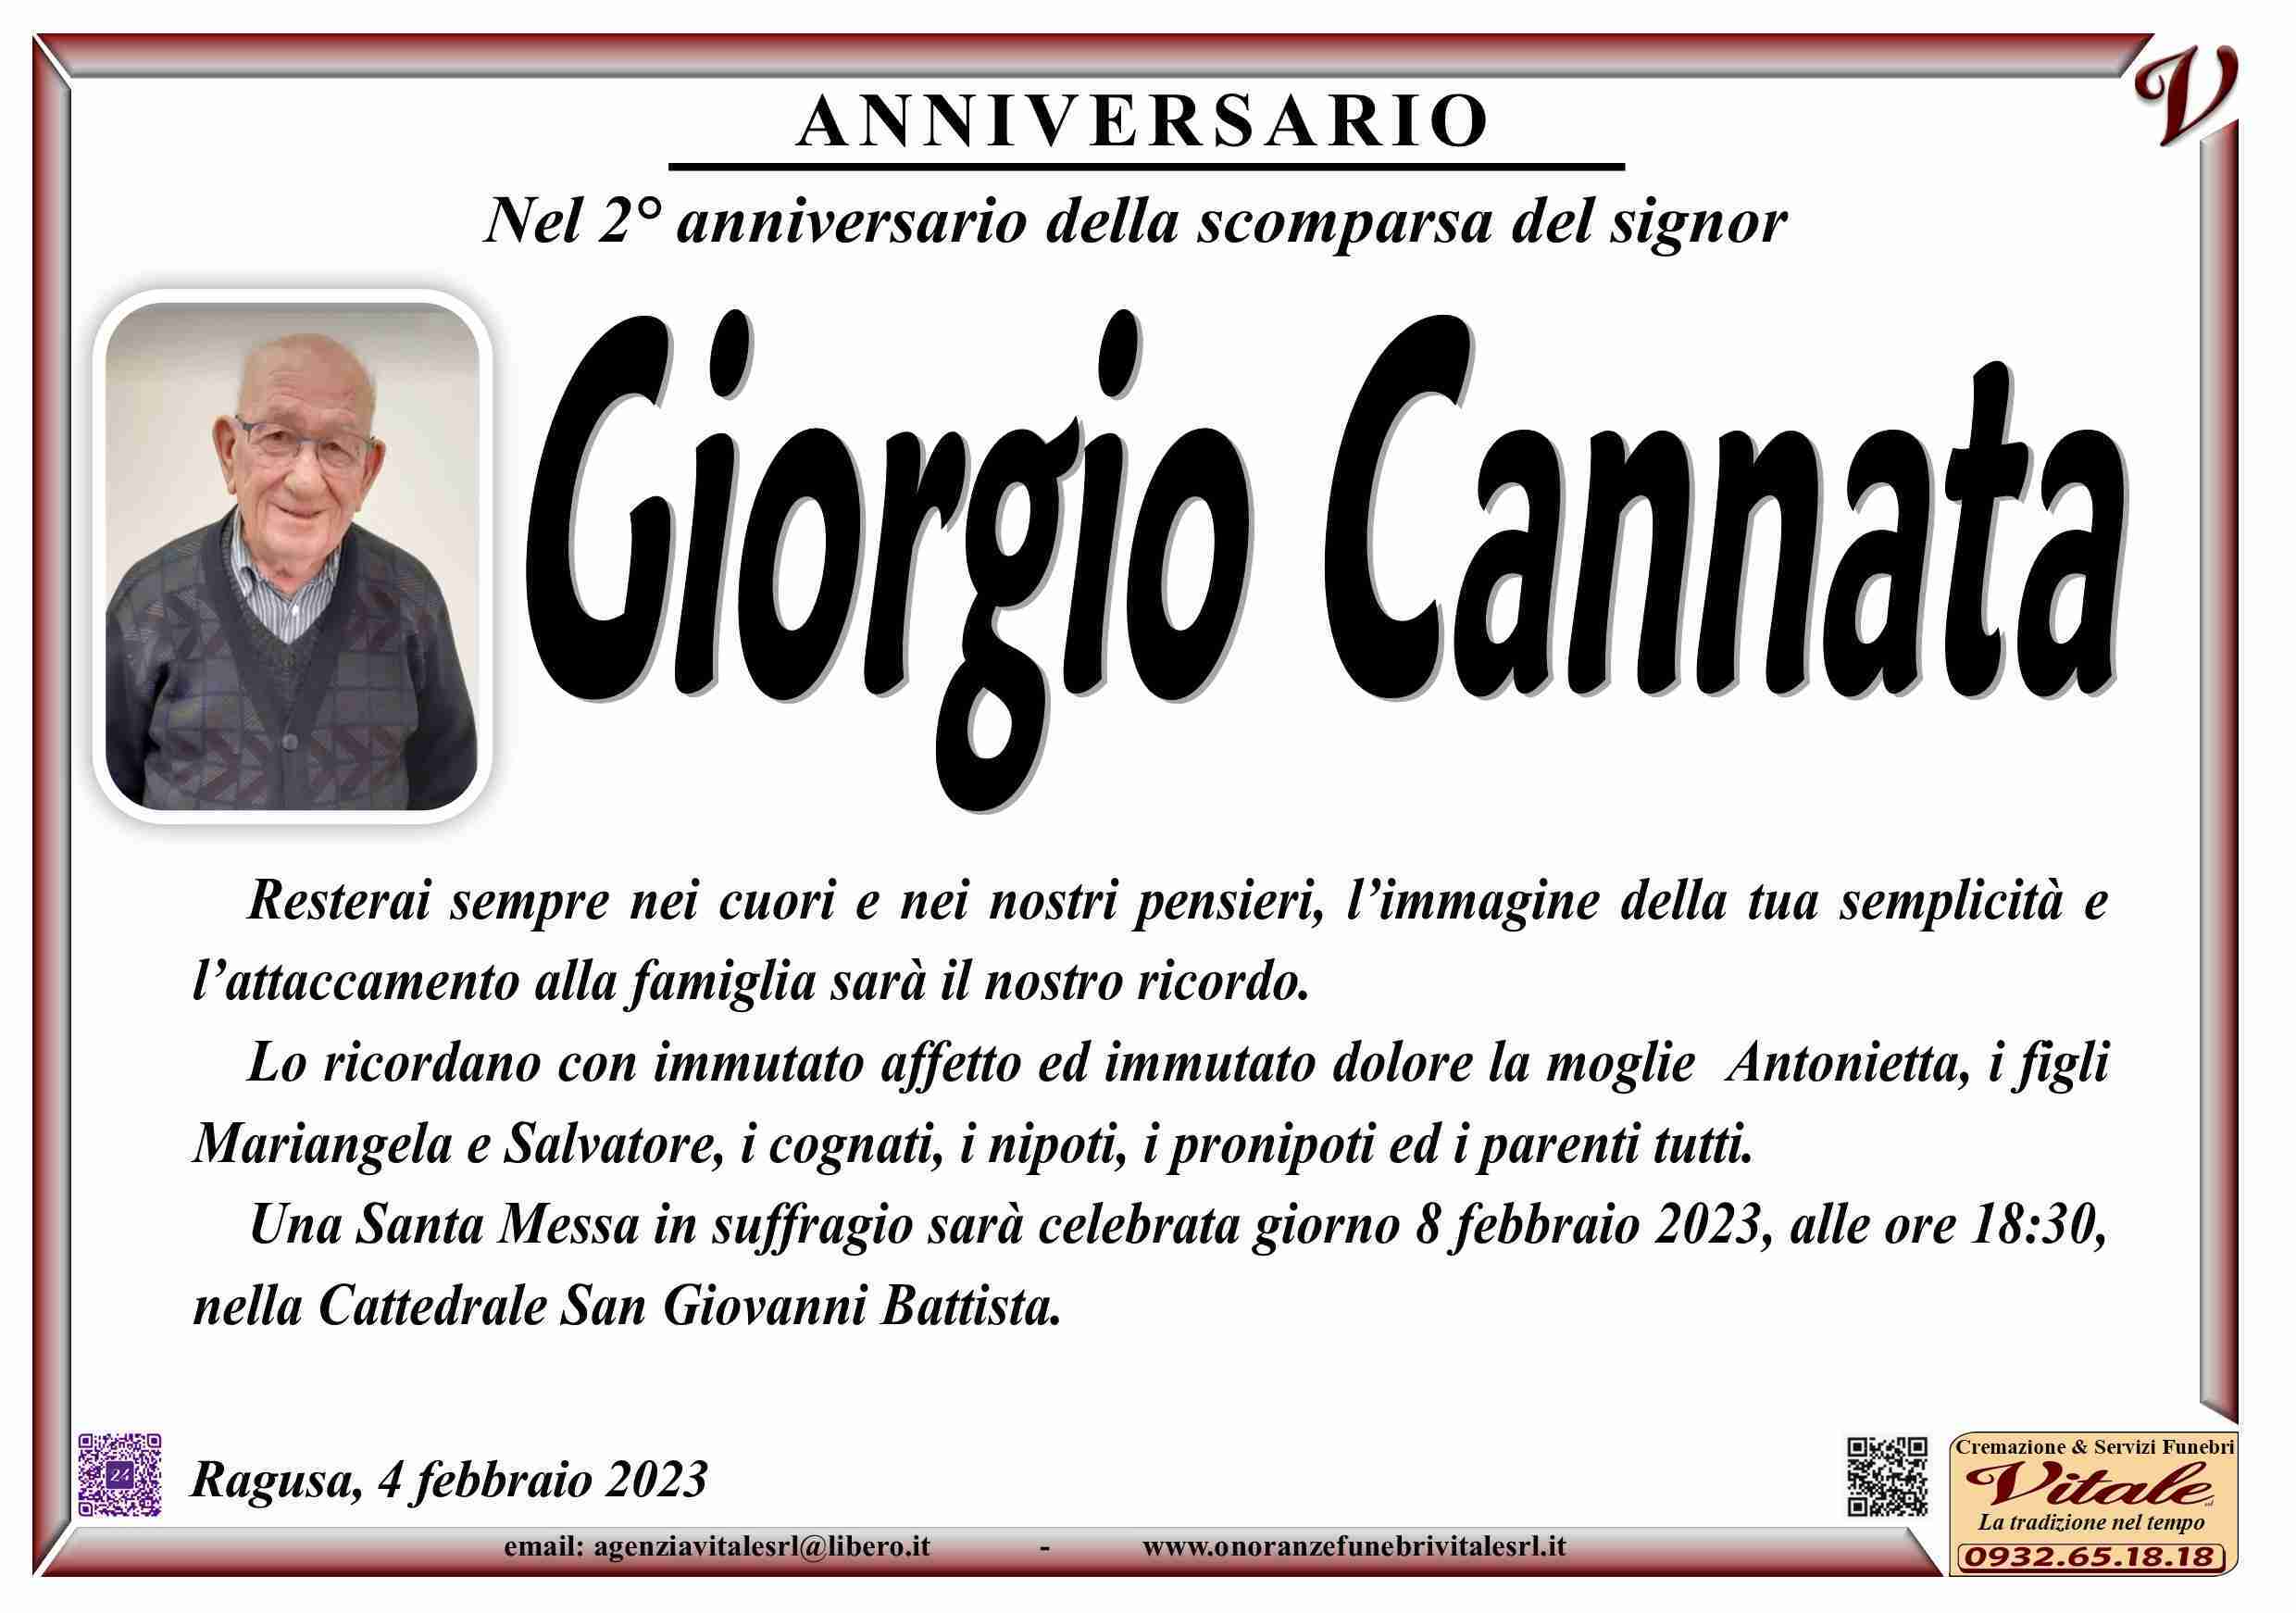 Giorgio Cannata